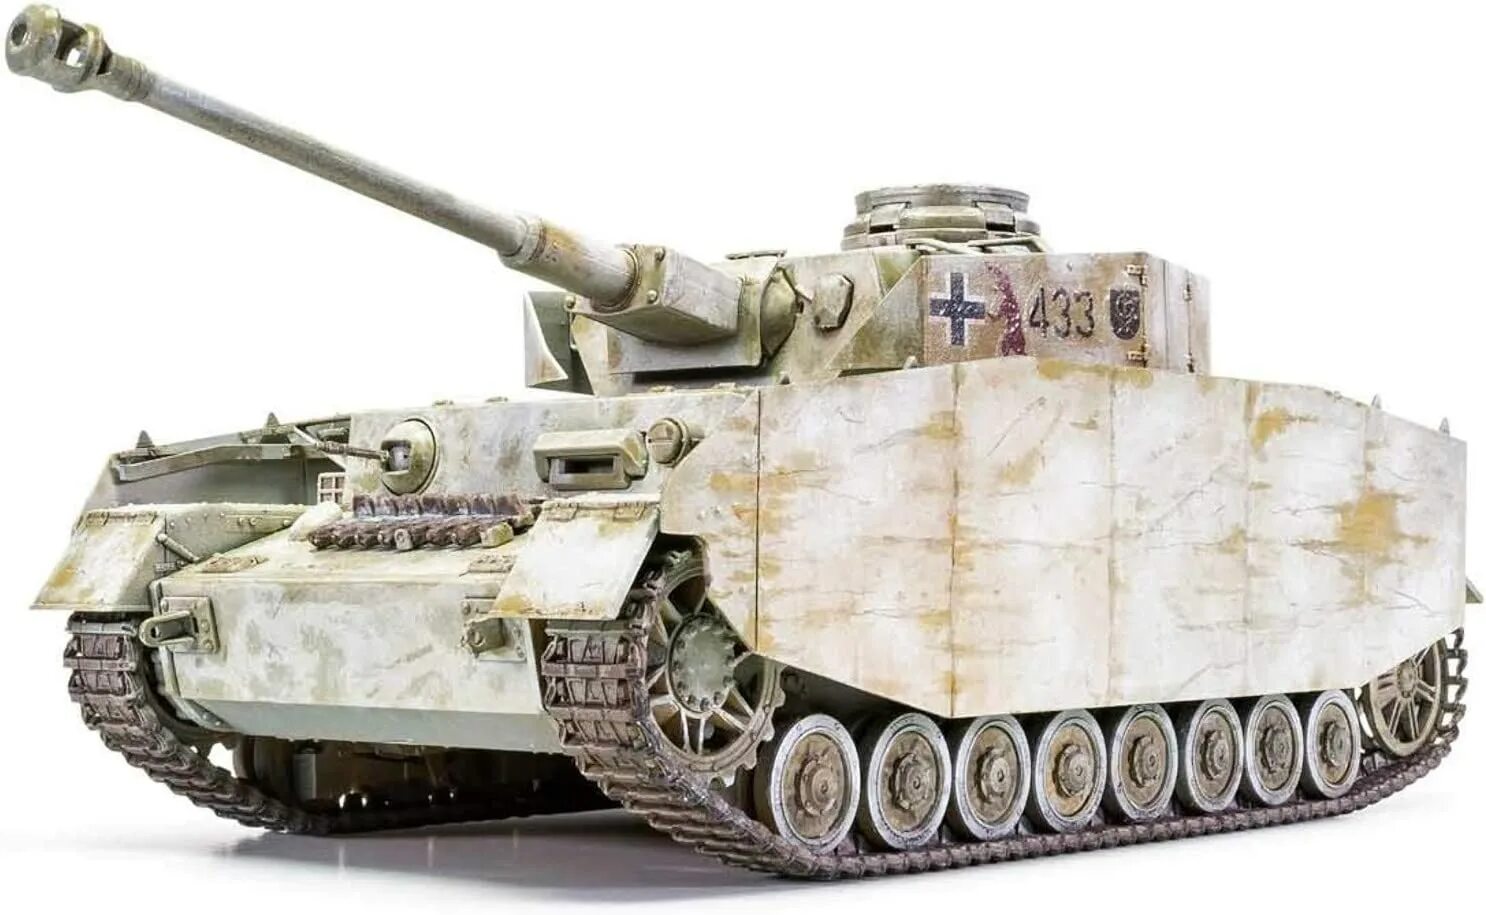 Tank kit. Модель 1/35 Panzer IV Ausf. H. Panzerkampfwagen 4 Ausf h камуфляж. PZ IV H. PZ IV Ausf h.